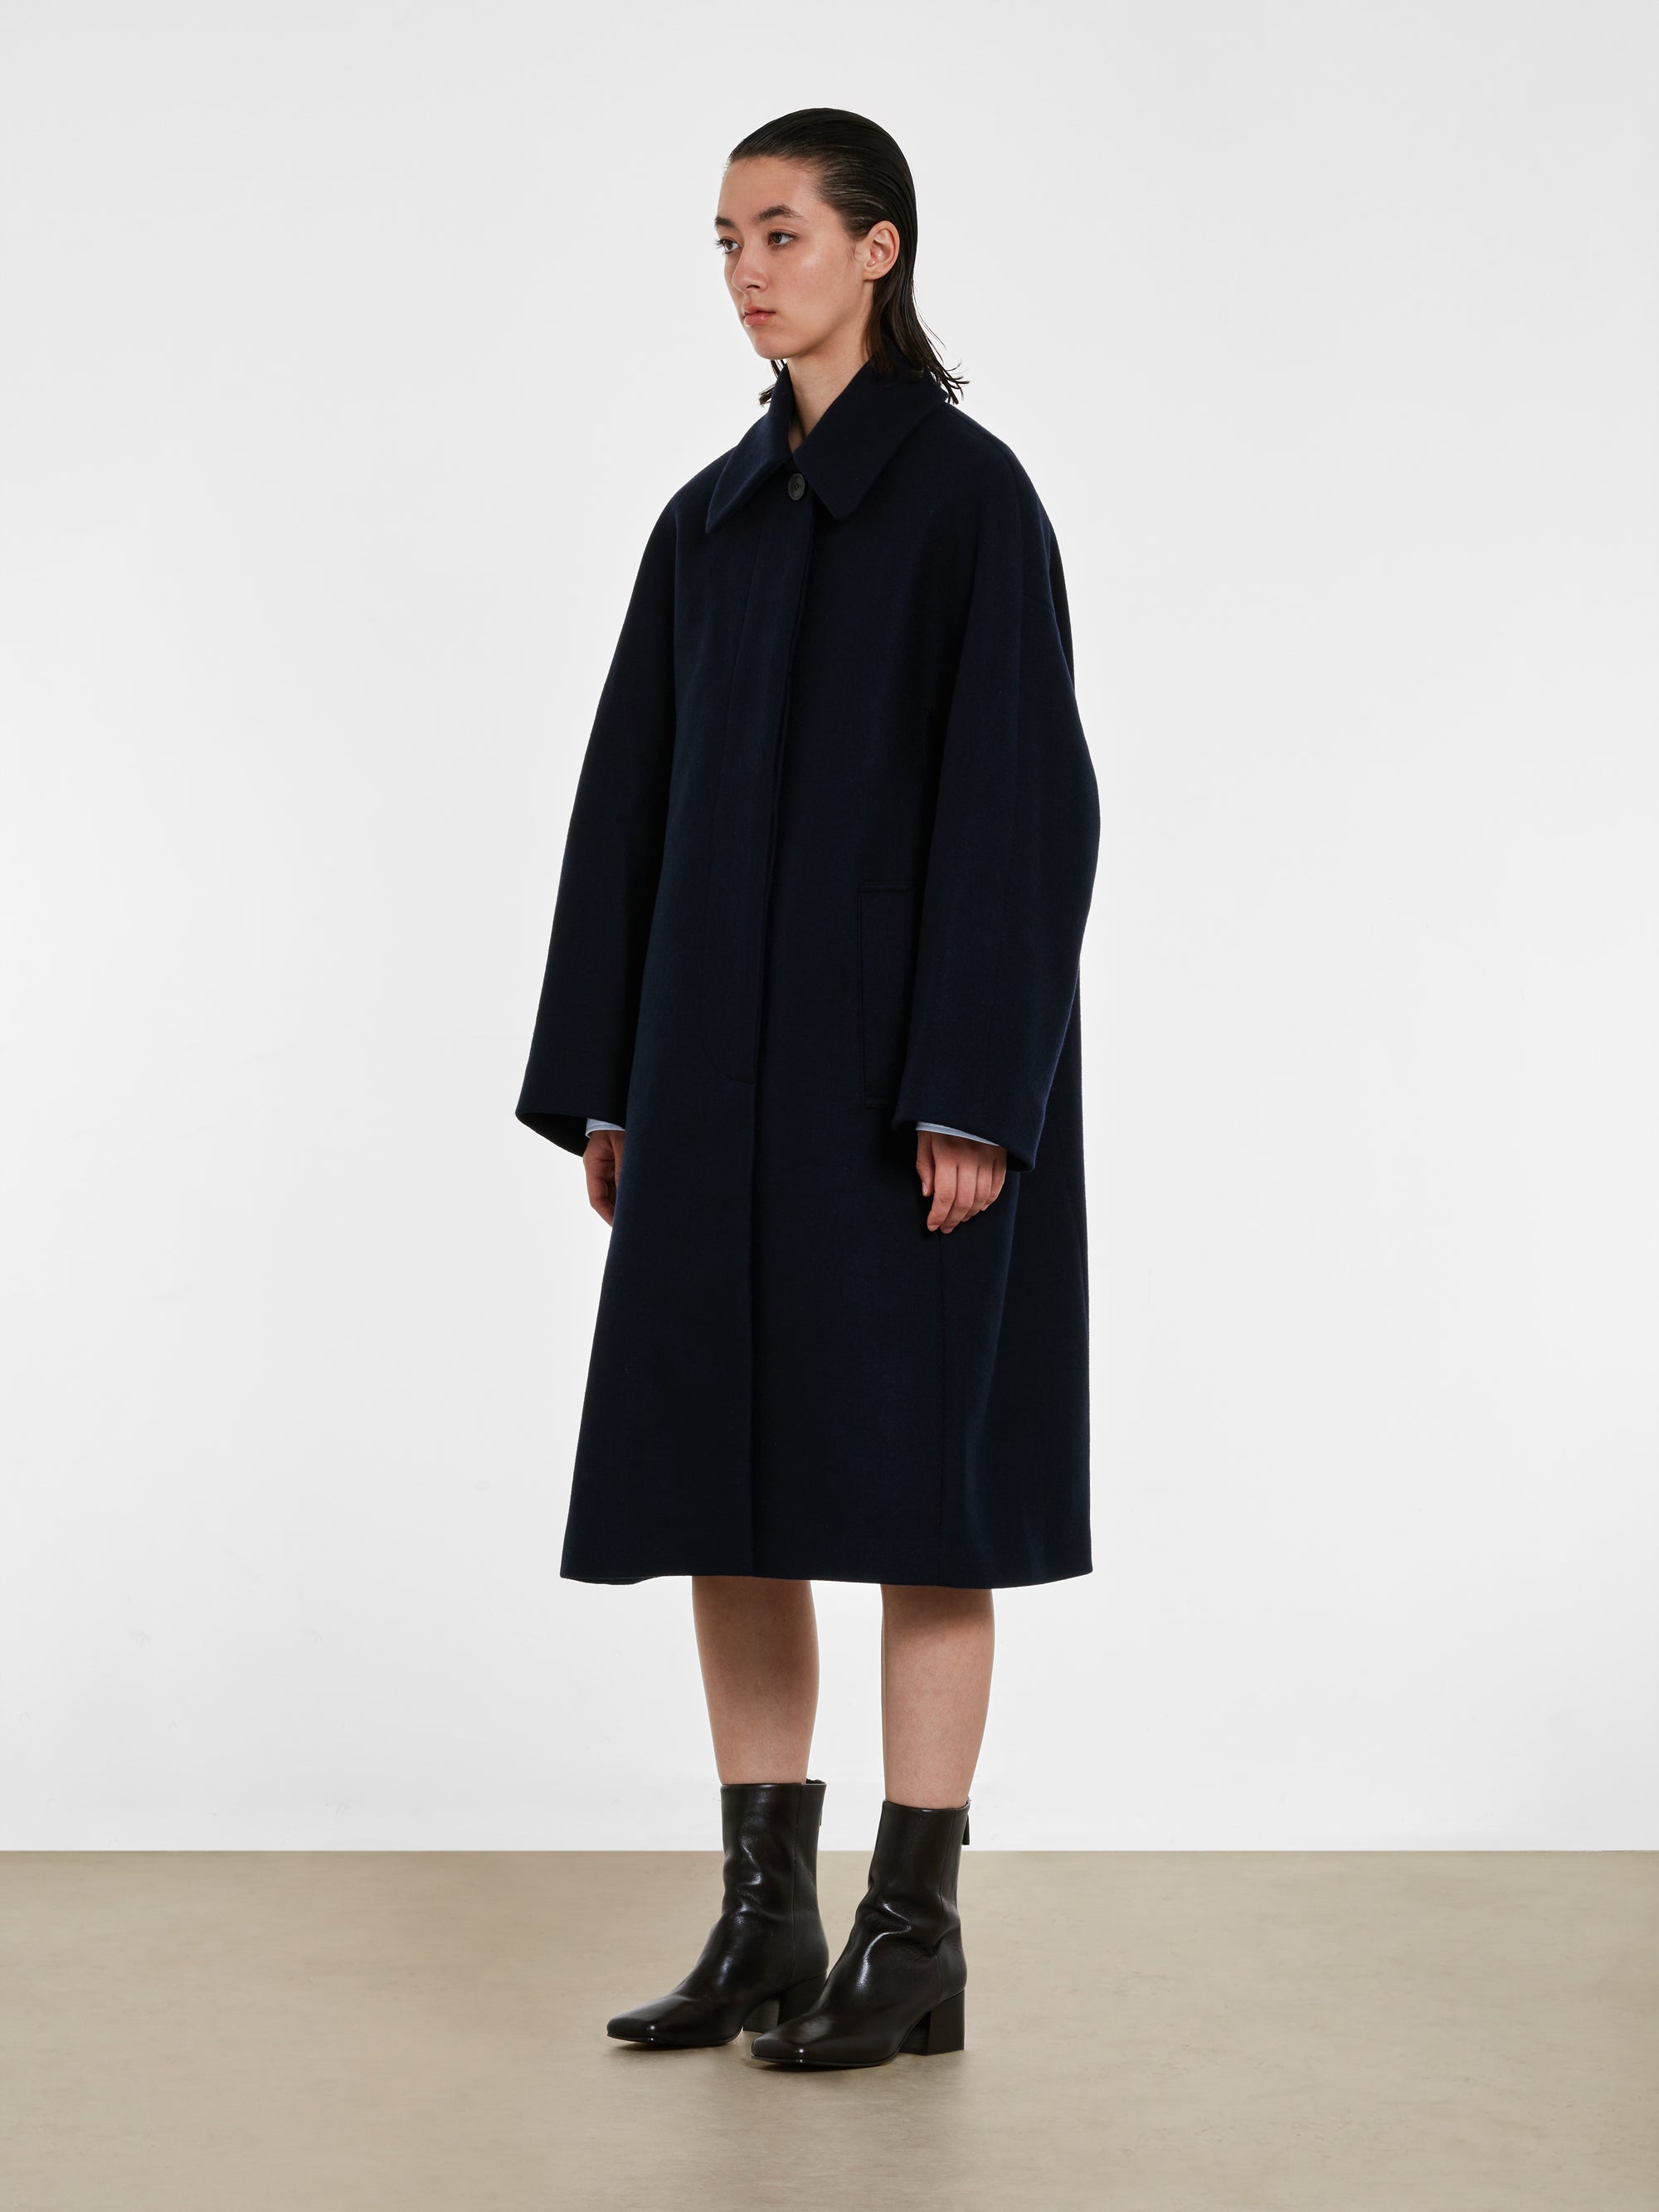 Dries Van Noten - Women’s Wool Coat - (Navy) view 3